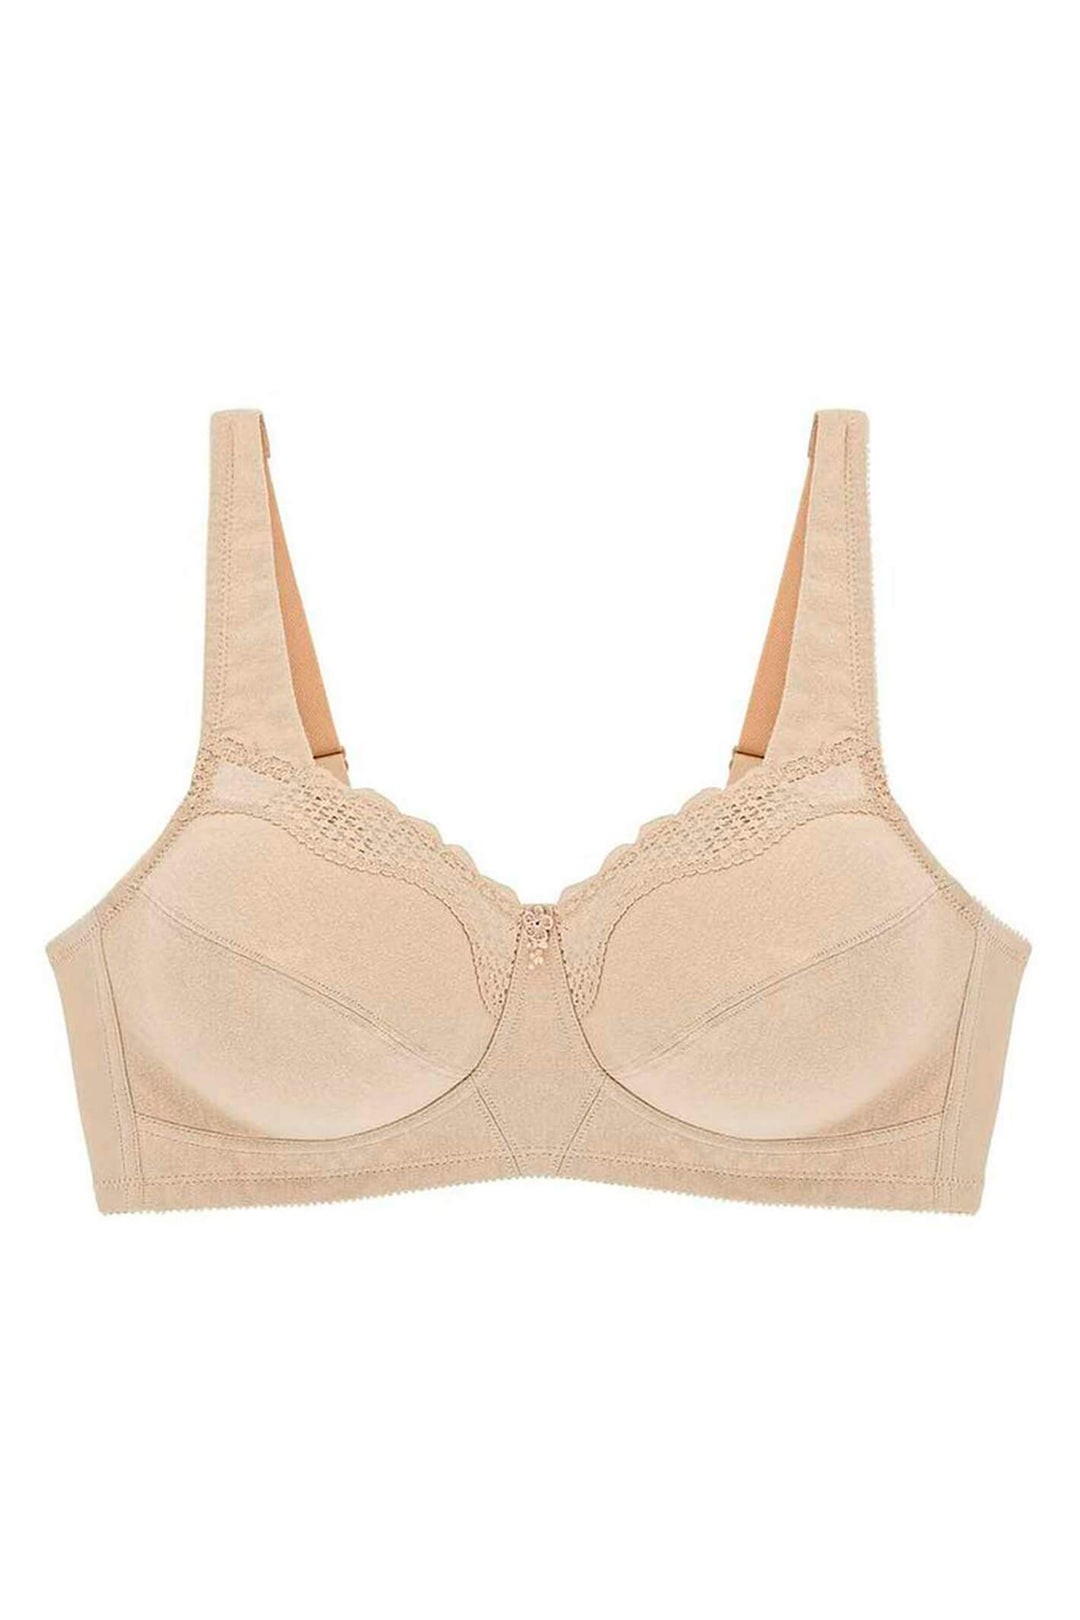 Bestform 535 Nude Cotton Comfort Bra - Shirley Allum Boutique